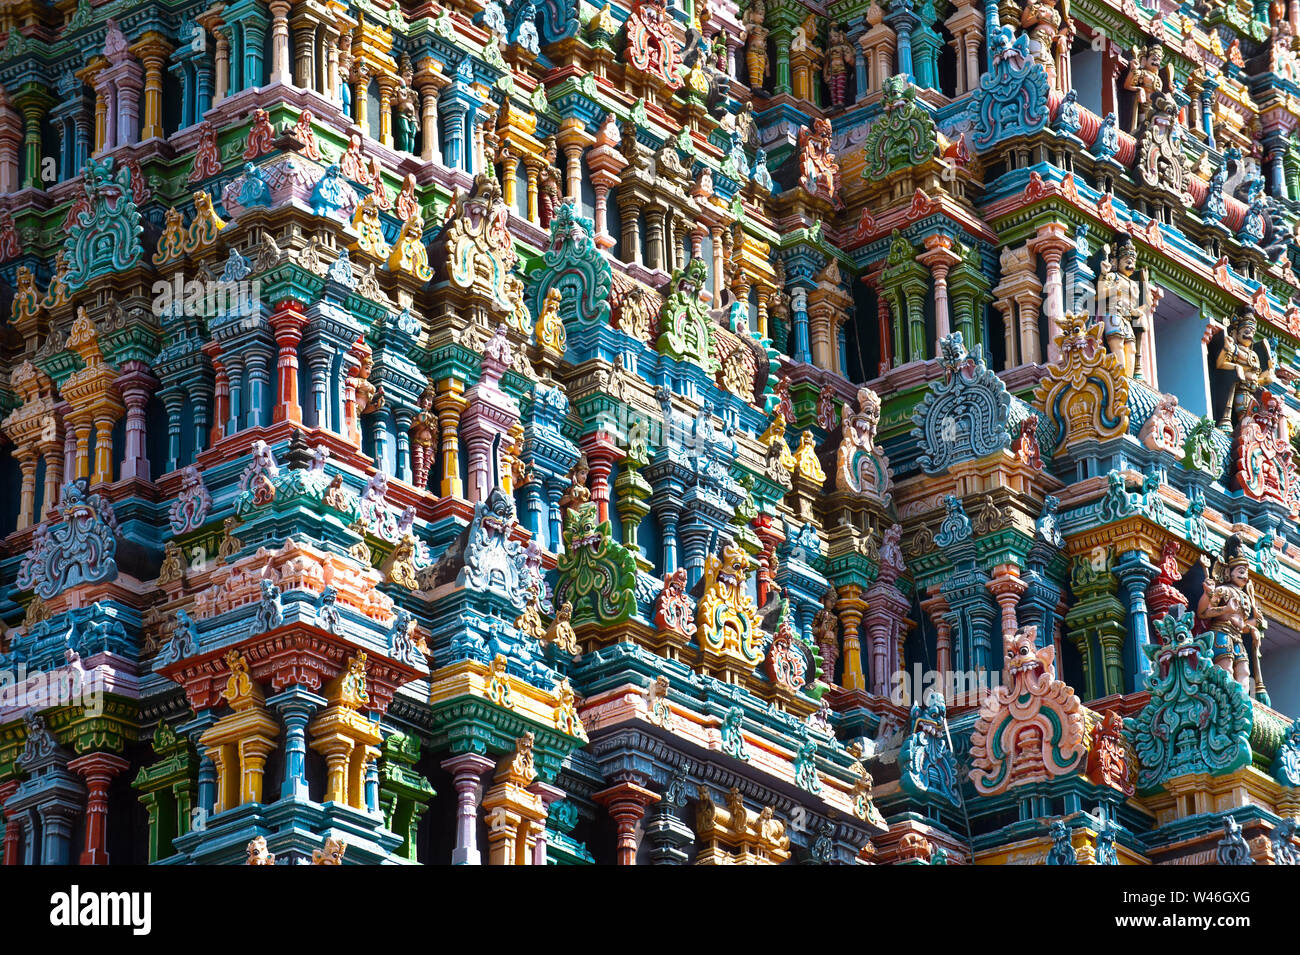 Gran arquitectura india arte religioso y panteón de dioses en el templo Gopuram (torre) fachada colorida antiguas estatuas de Mahabharata Héroes en el sur de la India Foto de stock